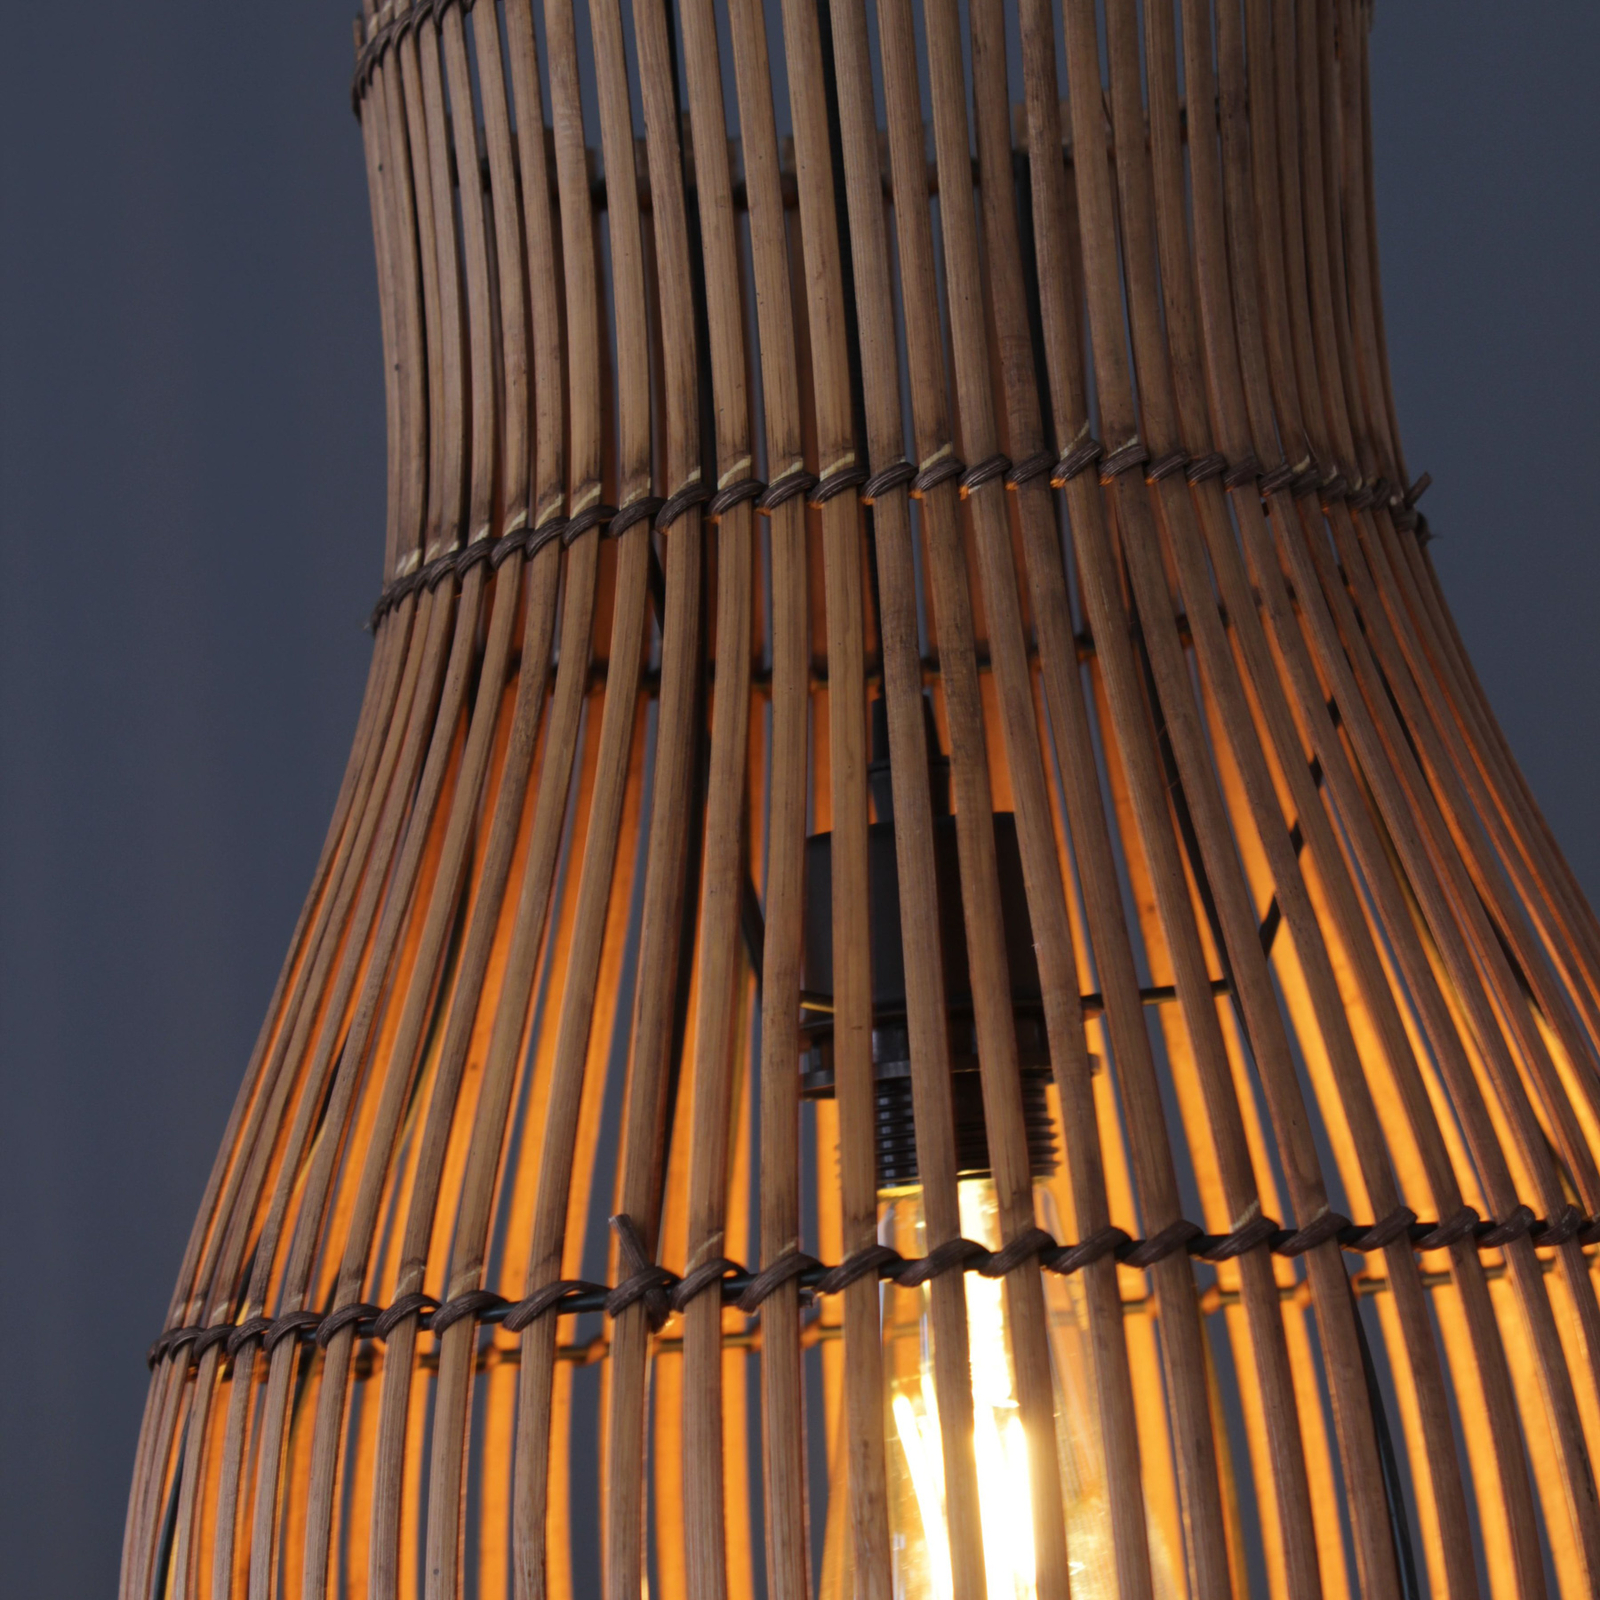 Bamboe hanglamp, bruin, Ø 25 cm